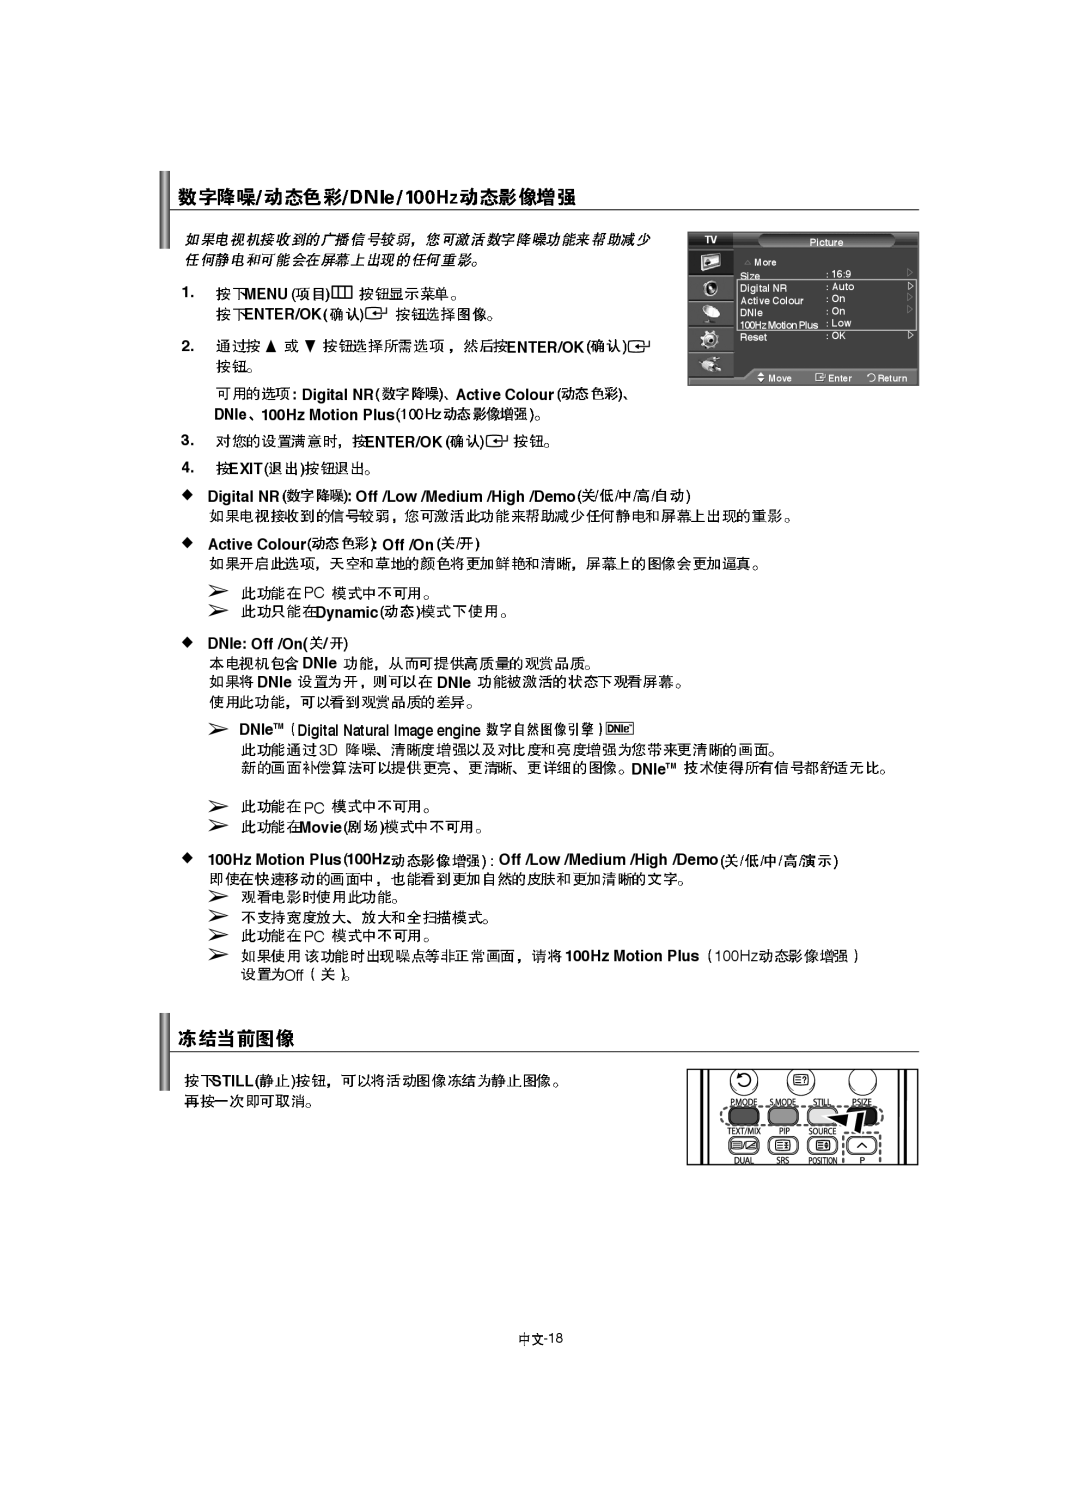 Samsung LA40F8, LA52F8, LA46F8 manual Menu, Active Colour, DNle 100Hz Motion Plus, Enter/Ok, Exit 